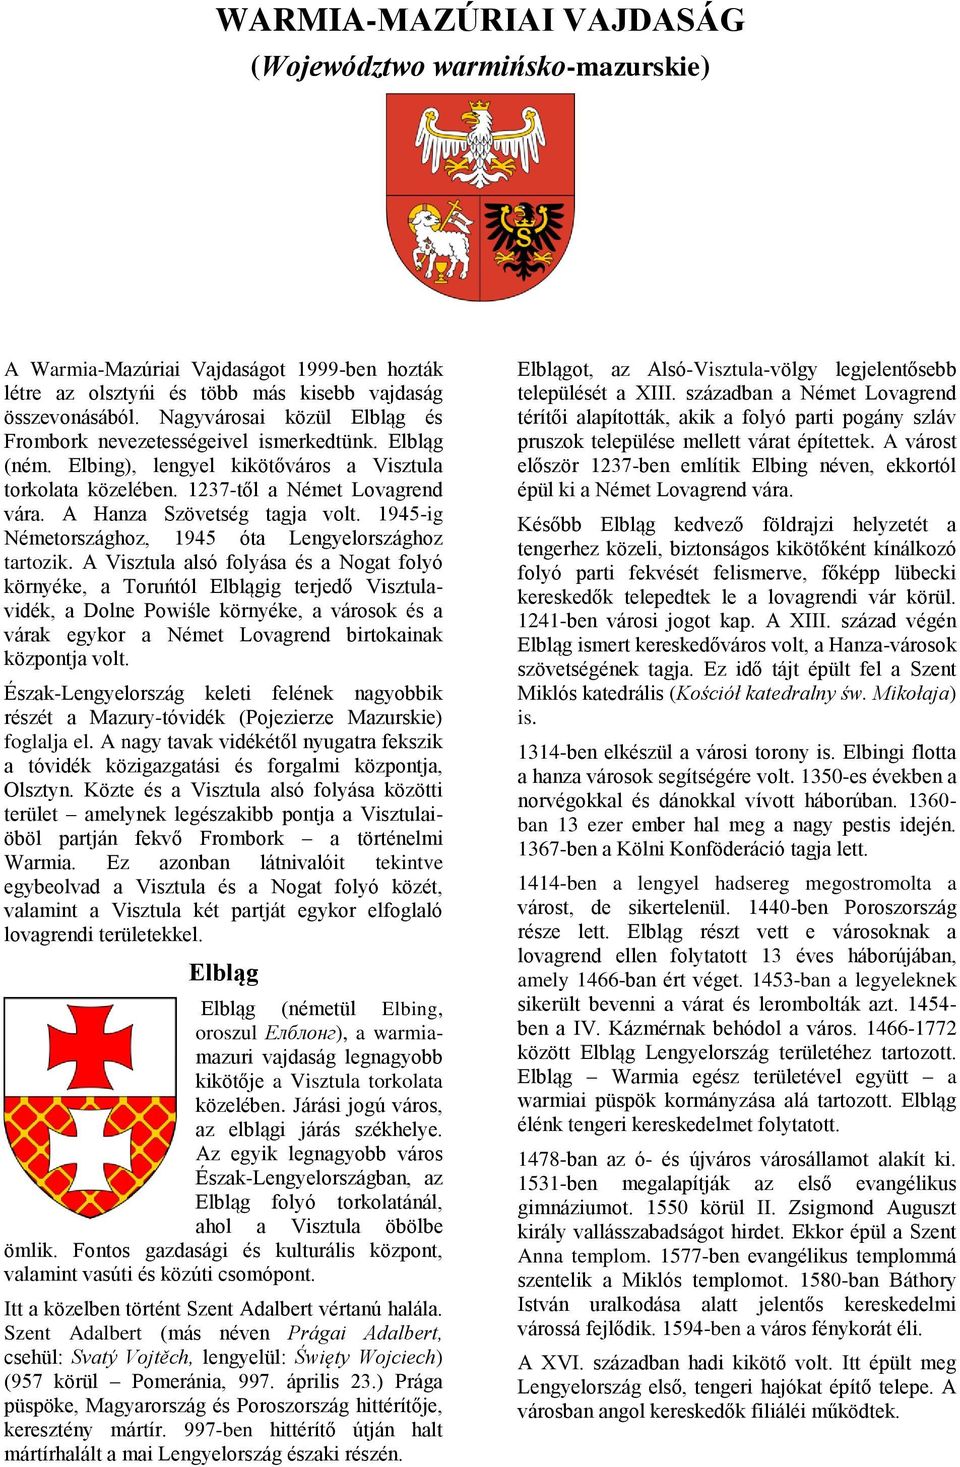 A Hanza Szövetség tagja volt. 1945-ig Németországhoz, 1945 óta Lengyelországhoz tartozik.